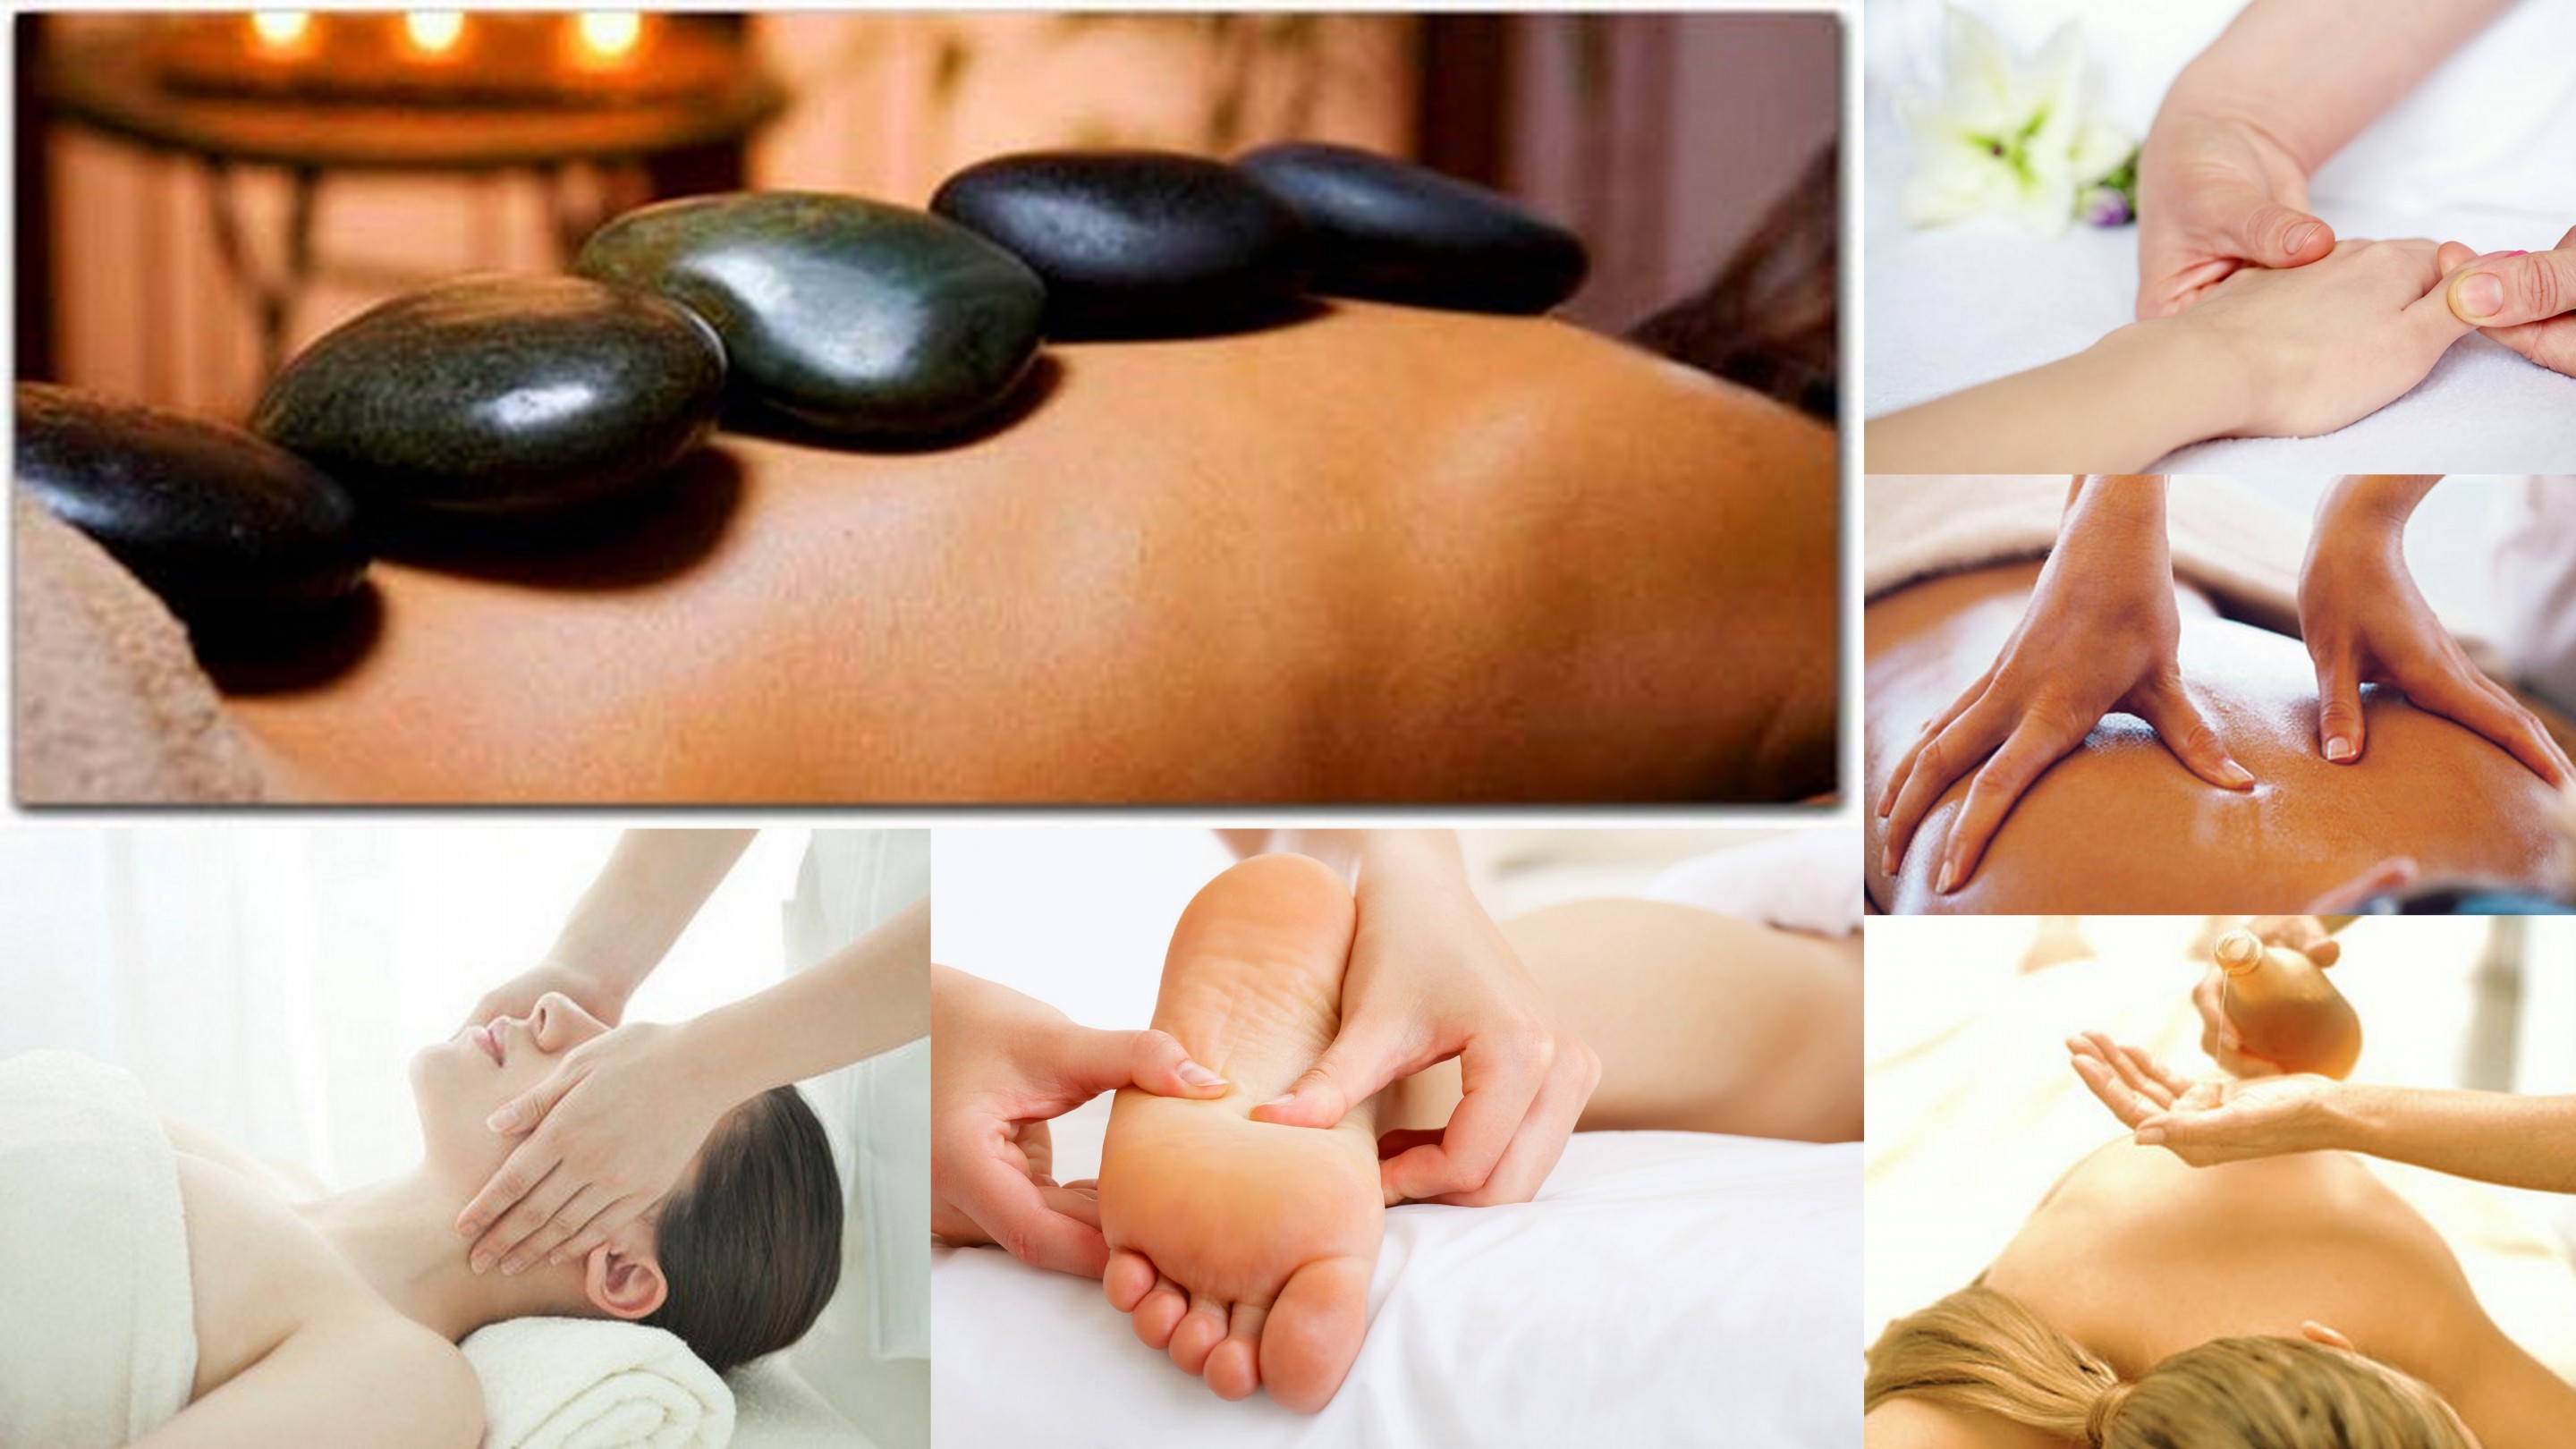 Massage types at Cherry Massage and Day Spa, Chinese deep tissue massage, Shiatsu, Swedish